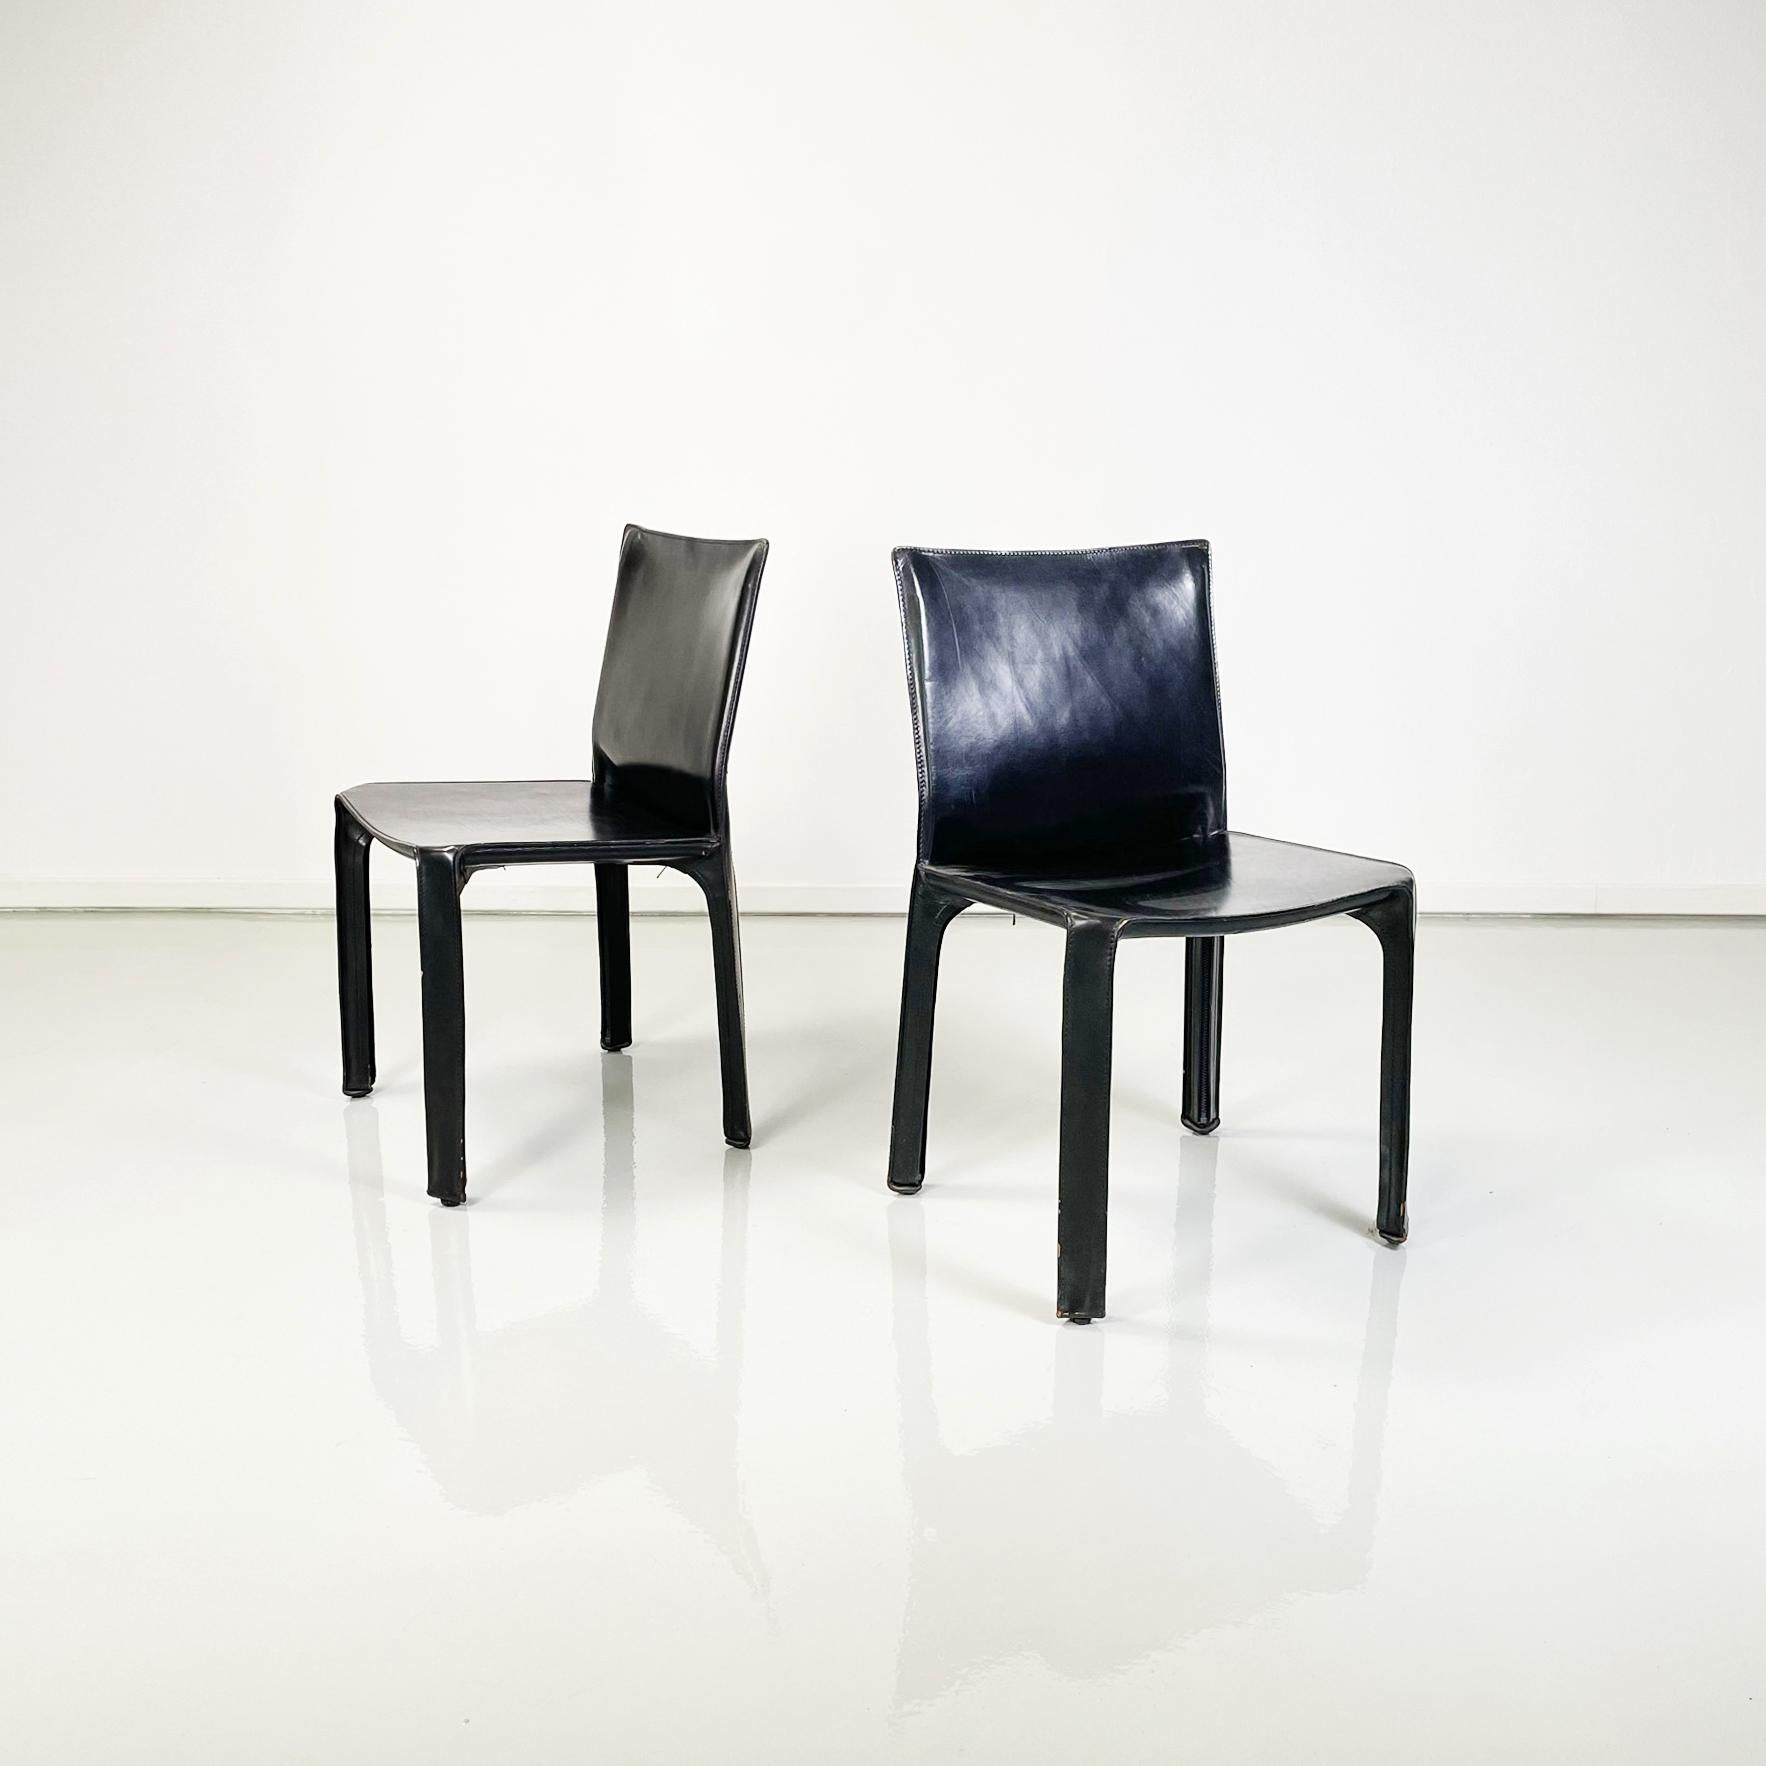 Italienische moderne Lederstühle mod CAB 414 von Mario Bellini für Cassina, 1980er Jahre 
Set von fantastischen und komfortablen 6 Stuhl mod. CAB 412 in schwarzem Leder. Das Leder folgt den Formen des Sitzes, der Rückenlehne und der quadratischen